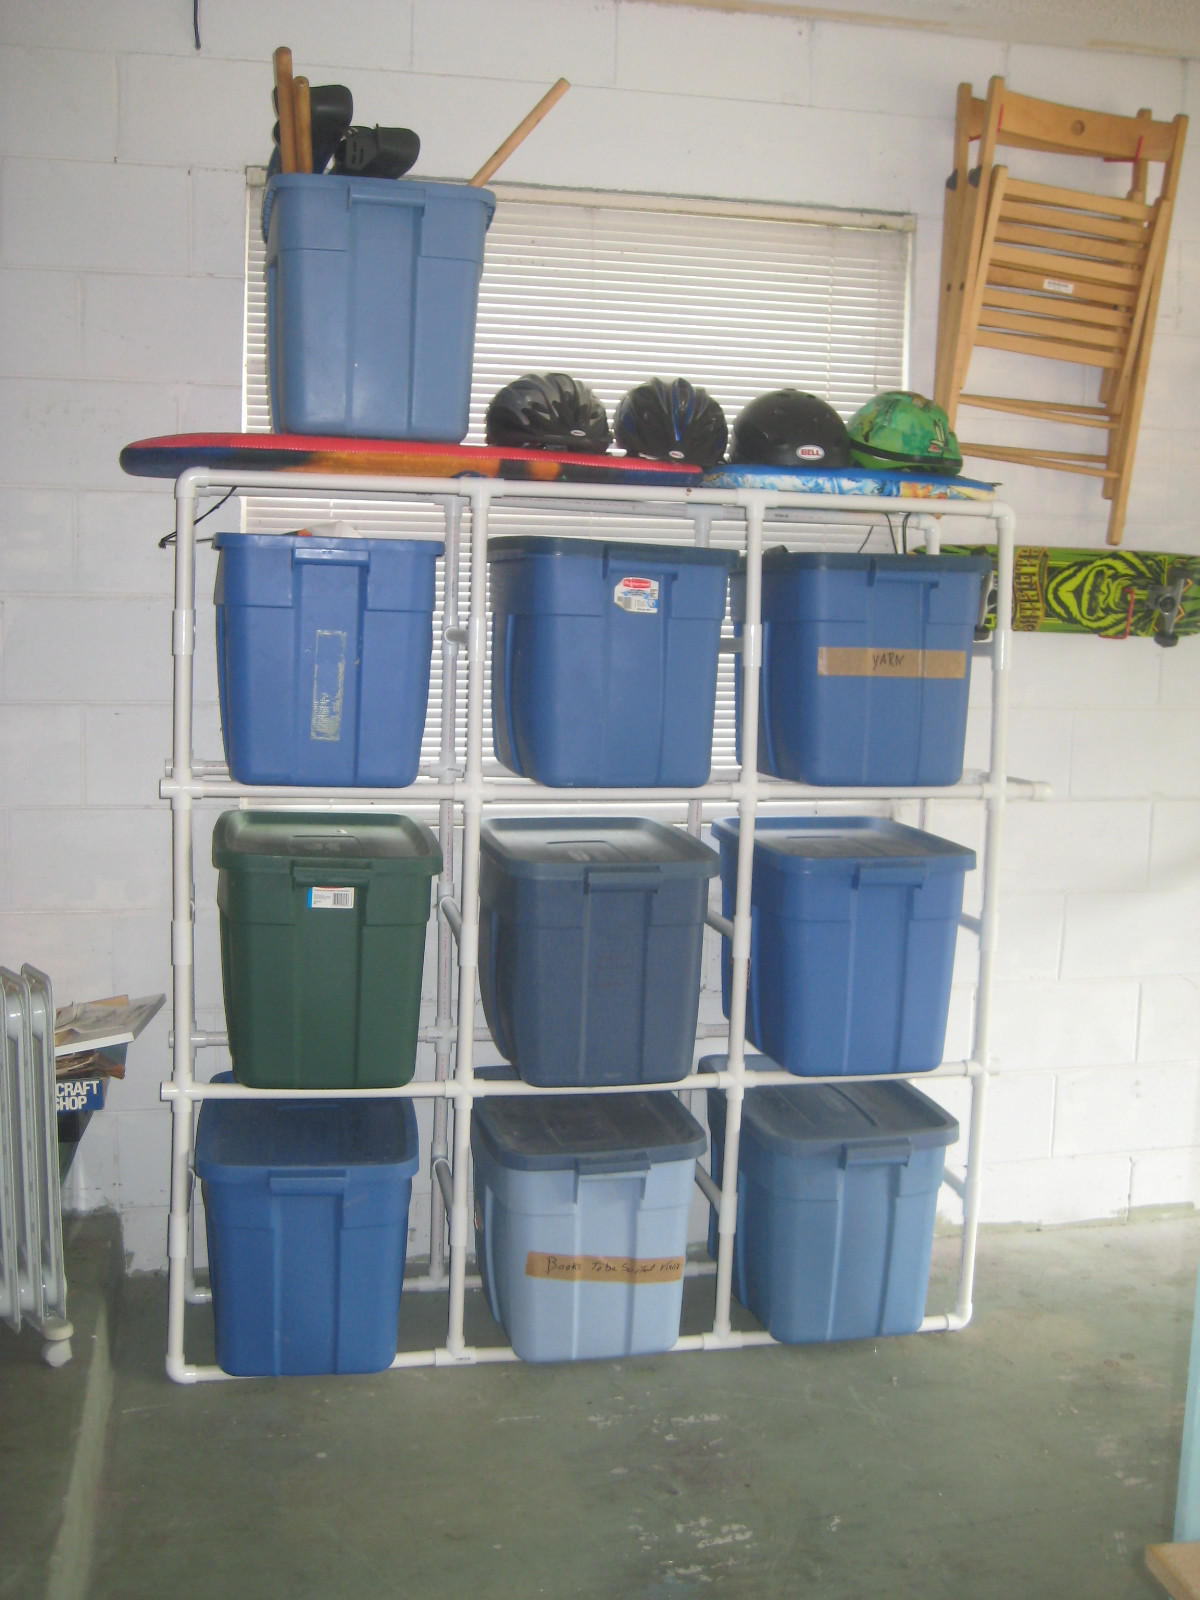 Best ideas about Garage Storage Boxes
. Save or Pin This Frugal Momma DIY Storage Box Garage Organizer Now.